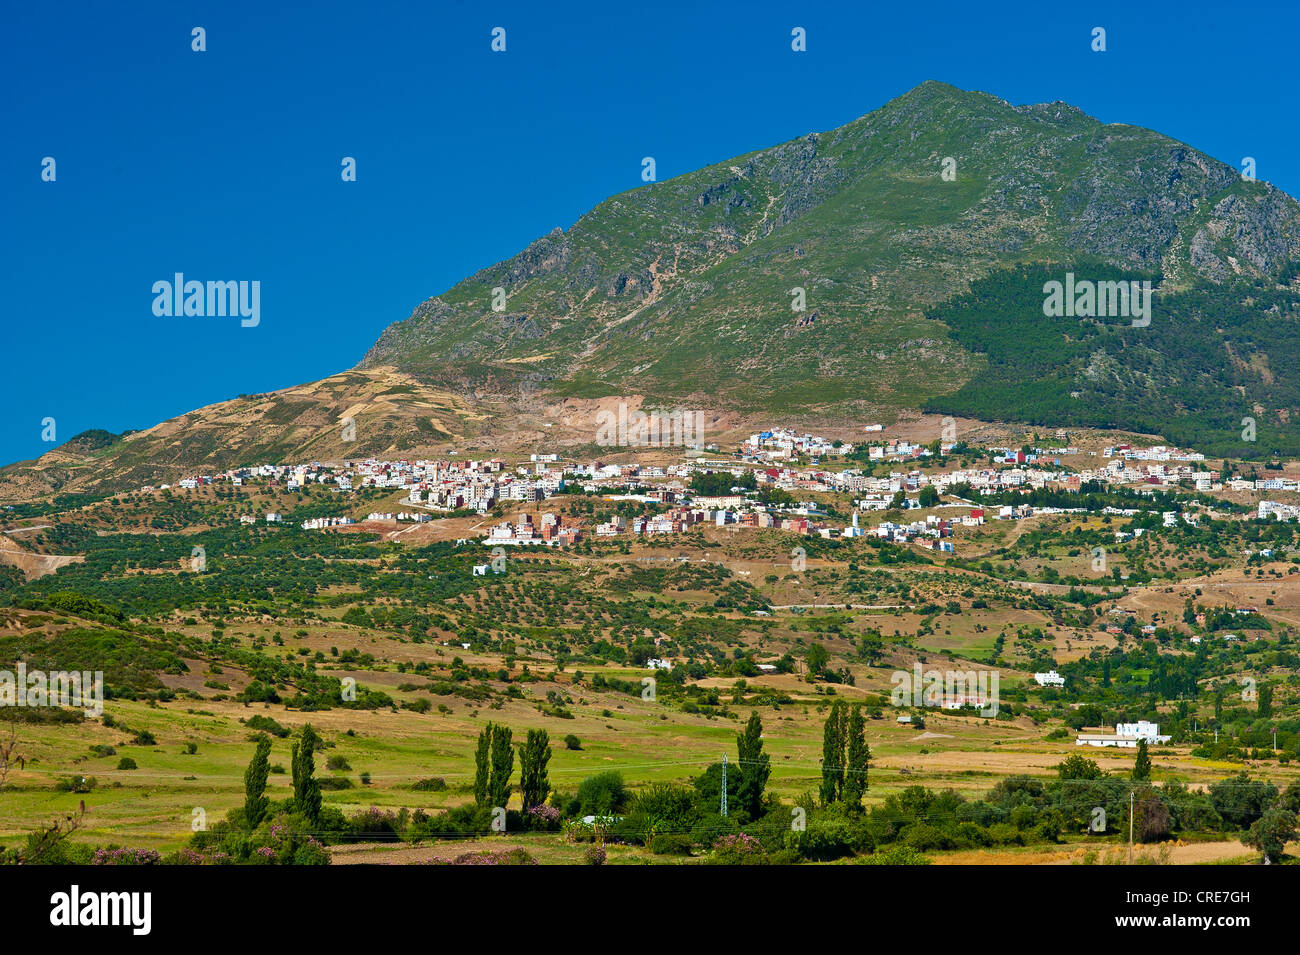 Paysage typique de montagne, ville de Chefchaouen et son environnement de petits champs, montagnes du Rif, nord du Maroc, Maroc Banque D'Images